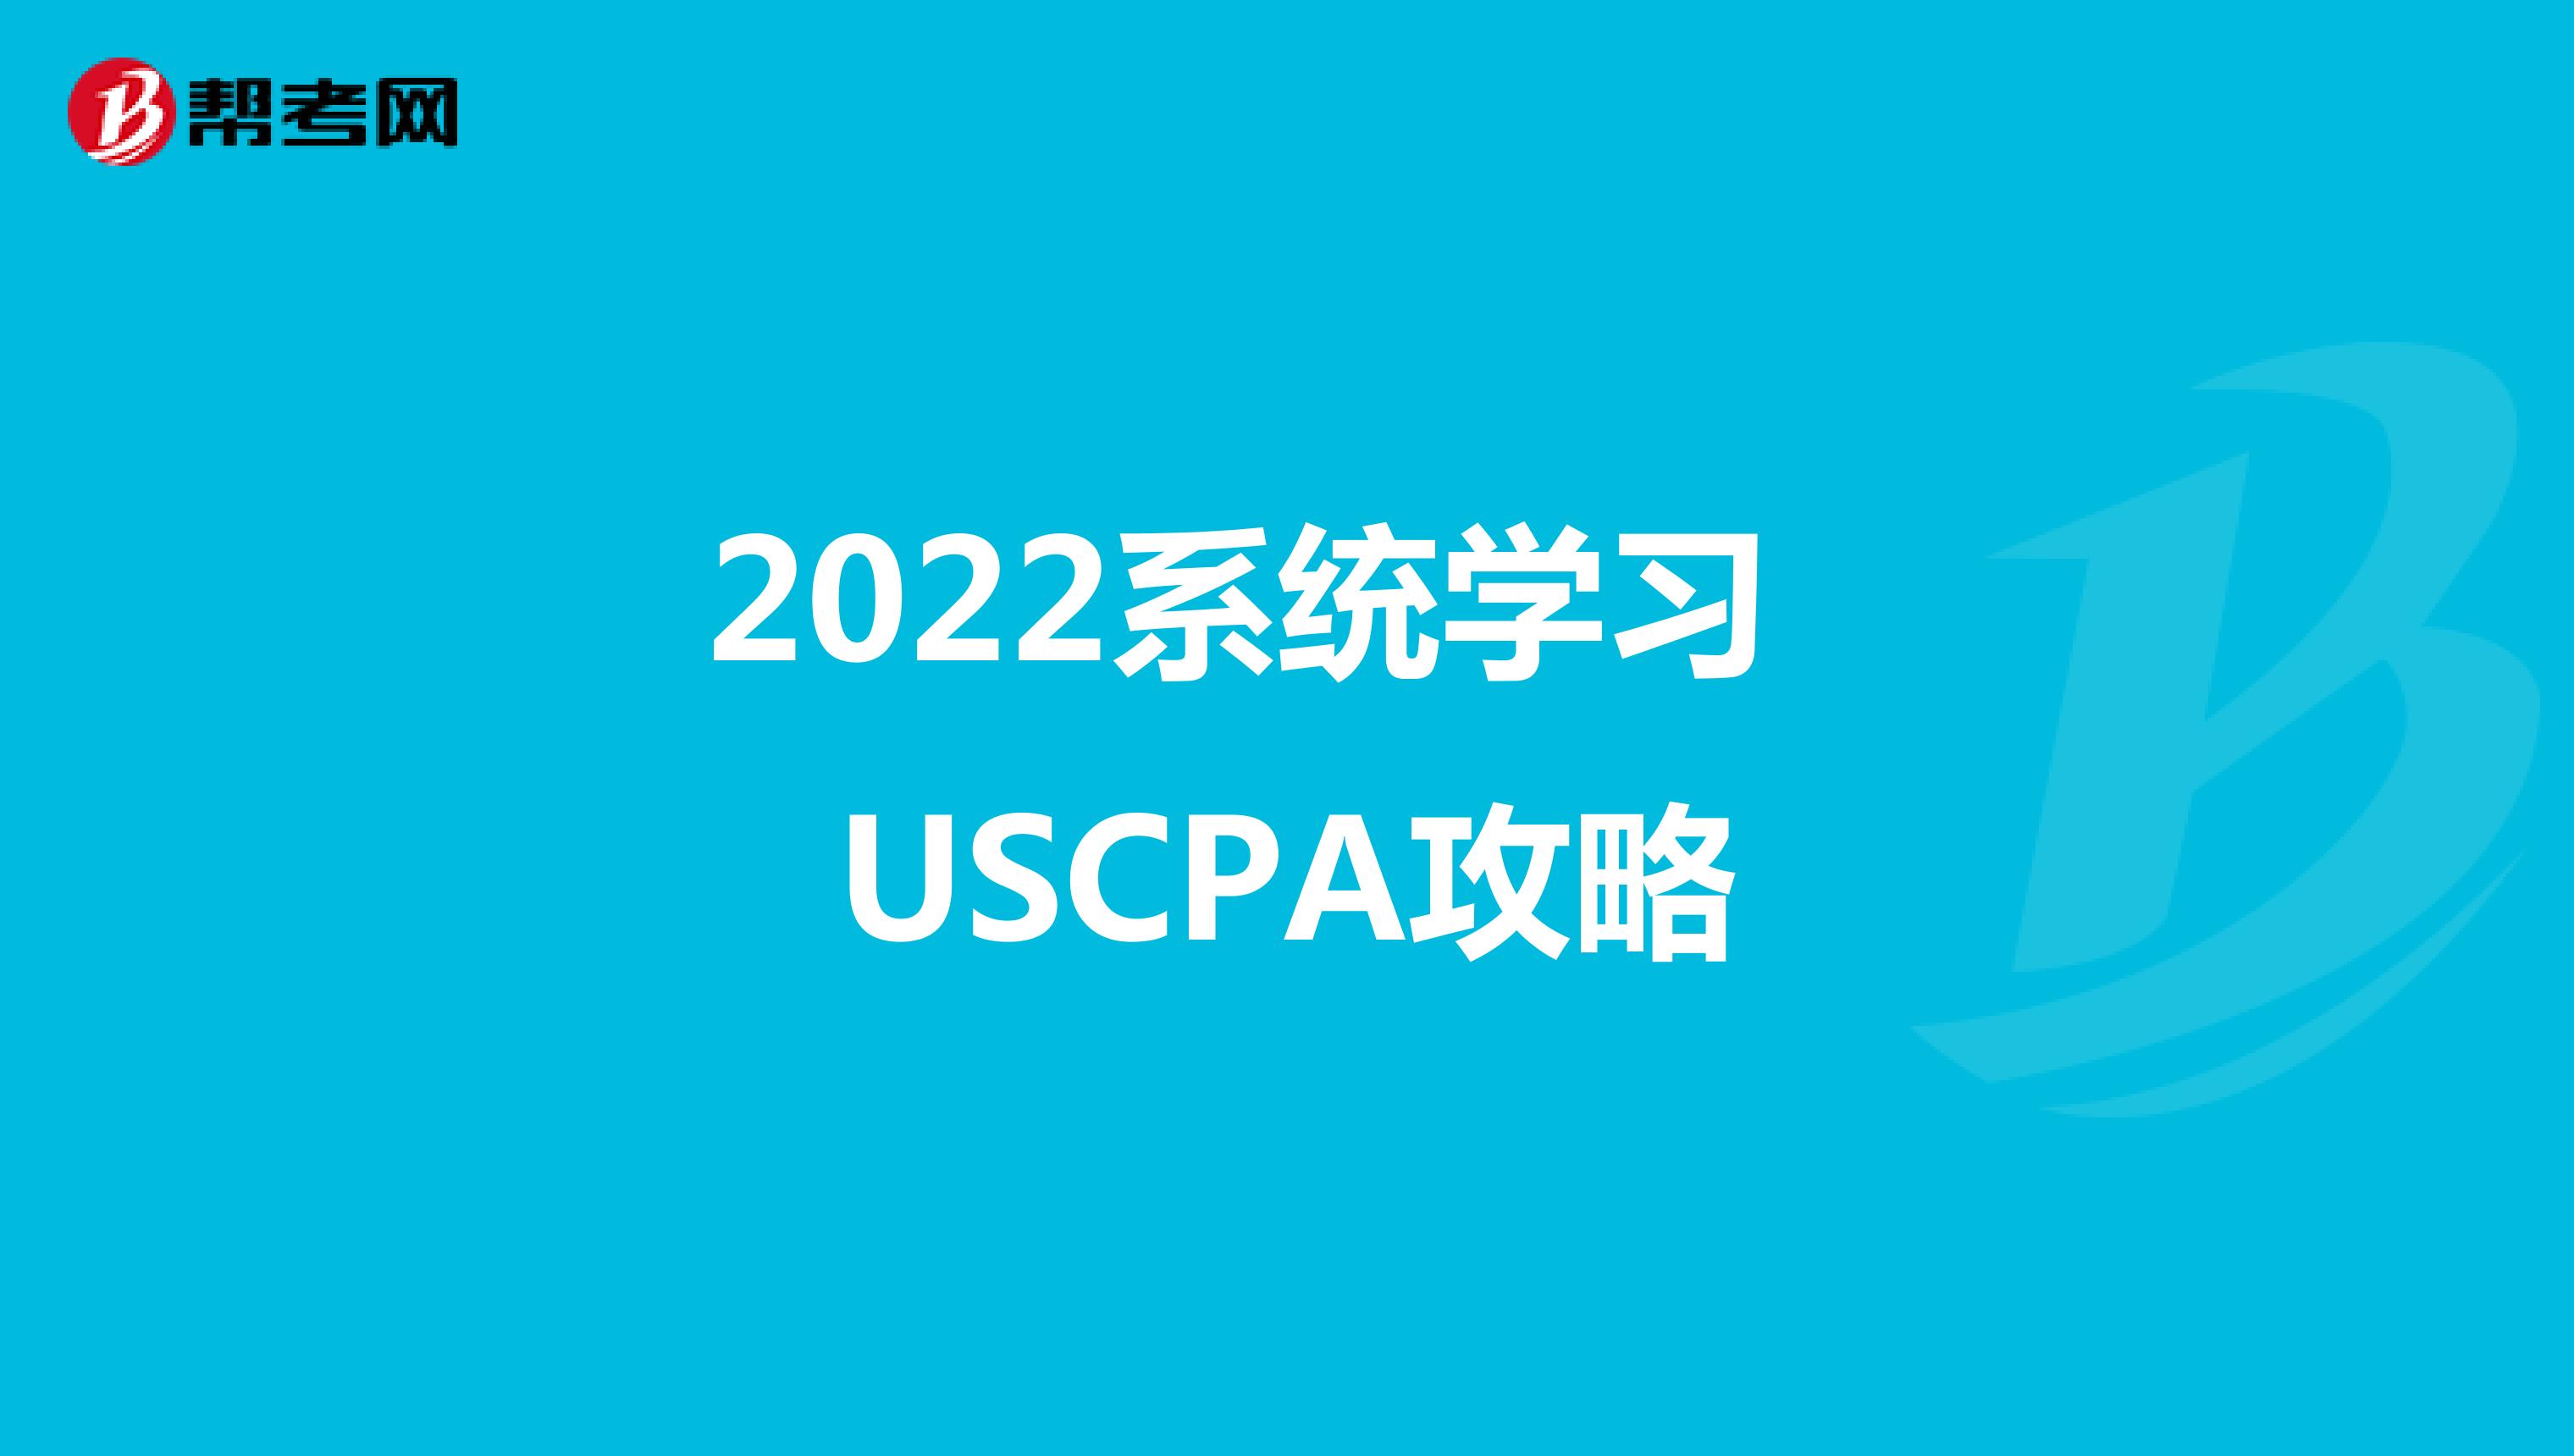 2022系统学习USCPA攻略